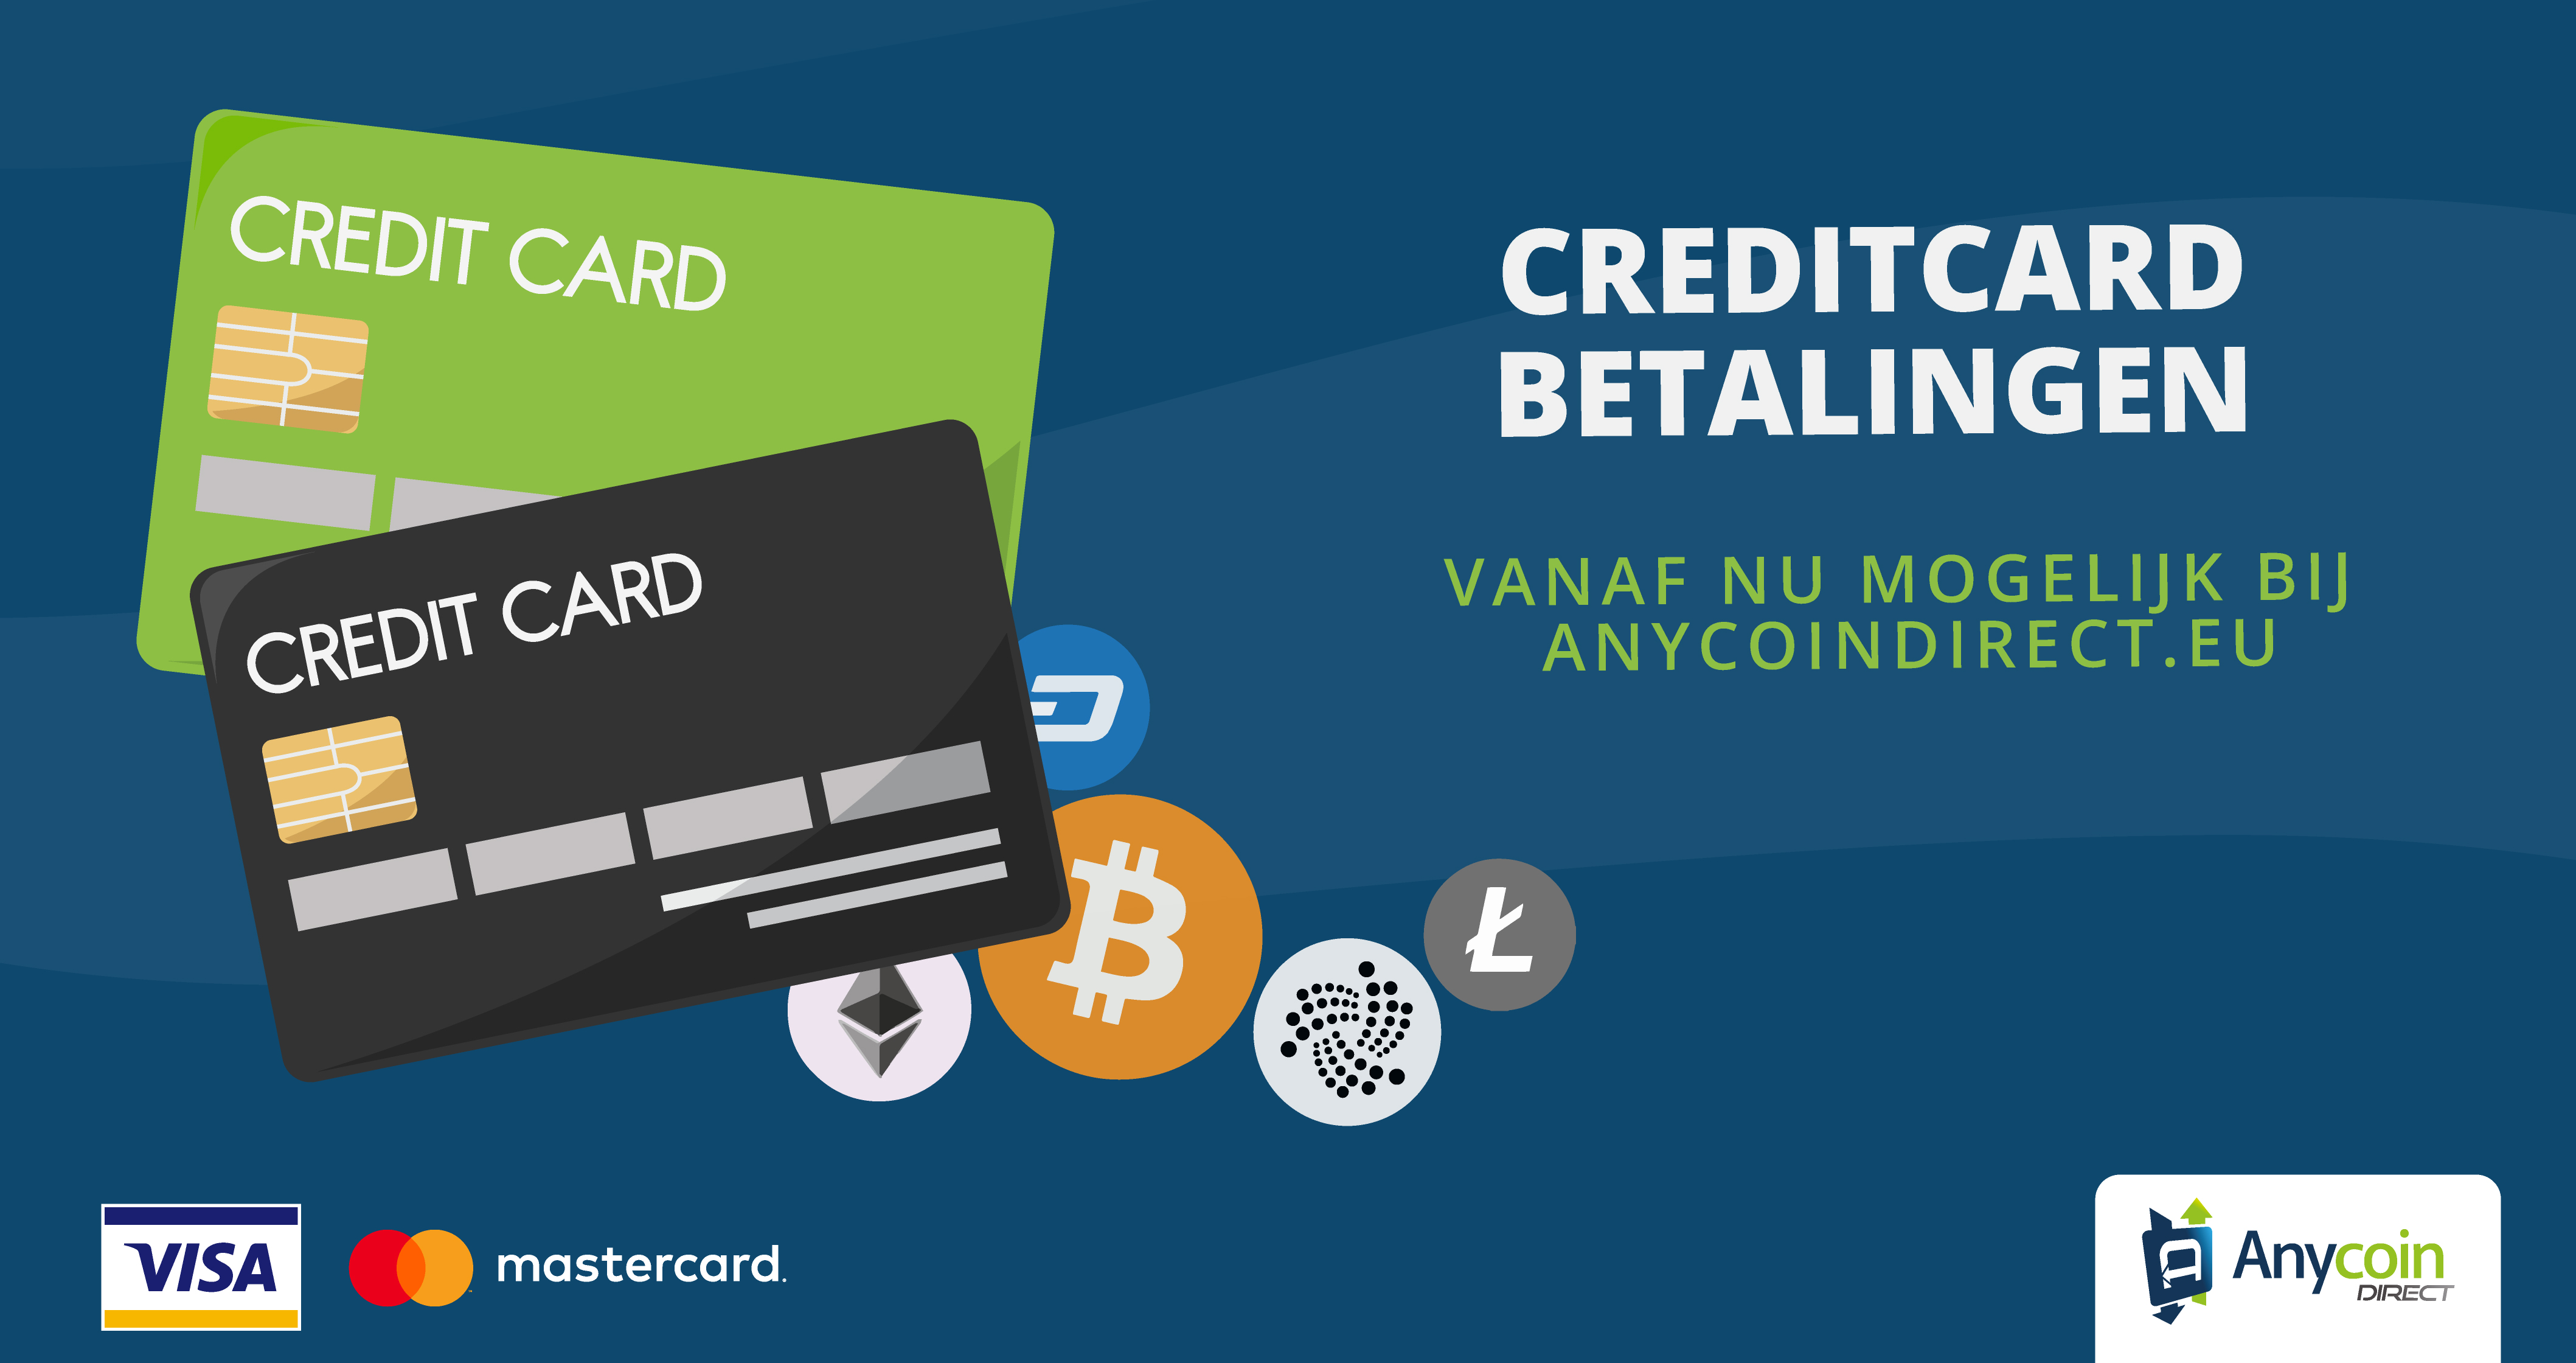 Anycoin Direct voegt creditcard betalingen toe aan haar handelsplatform